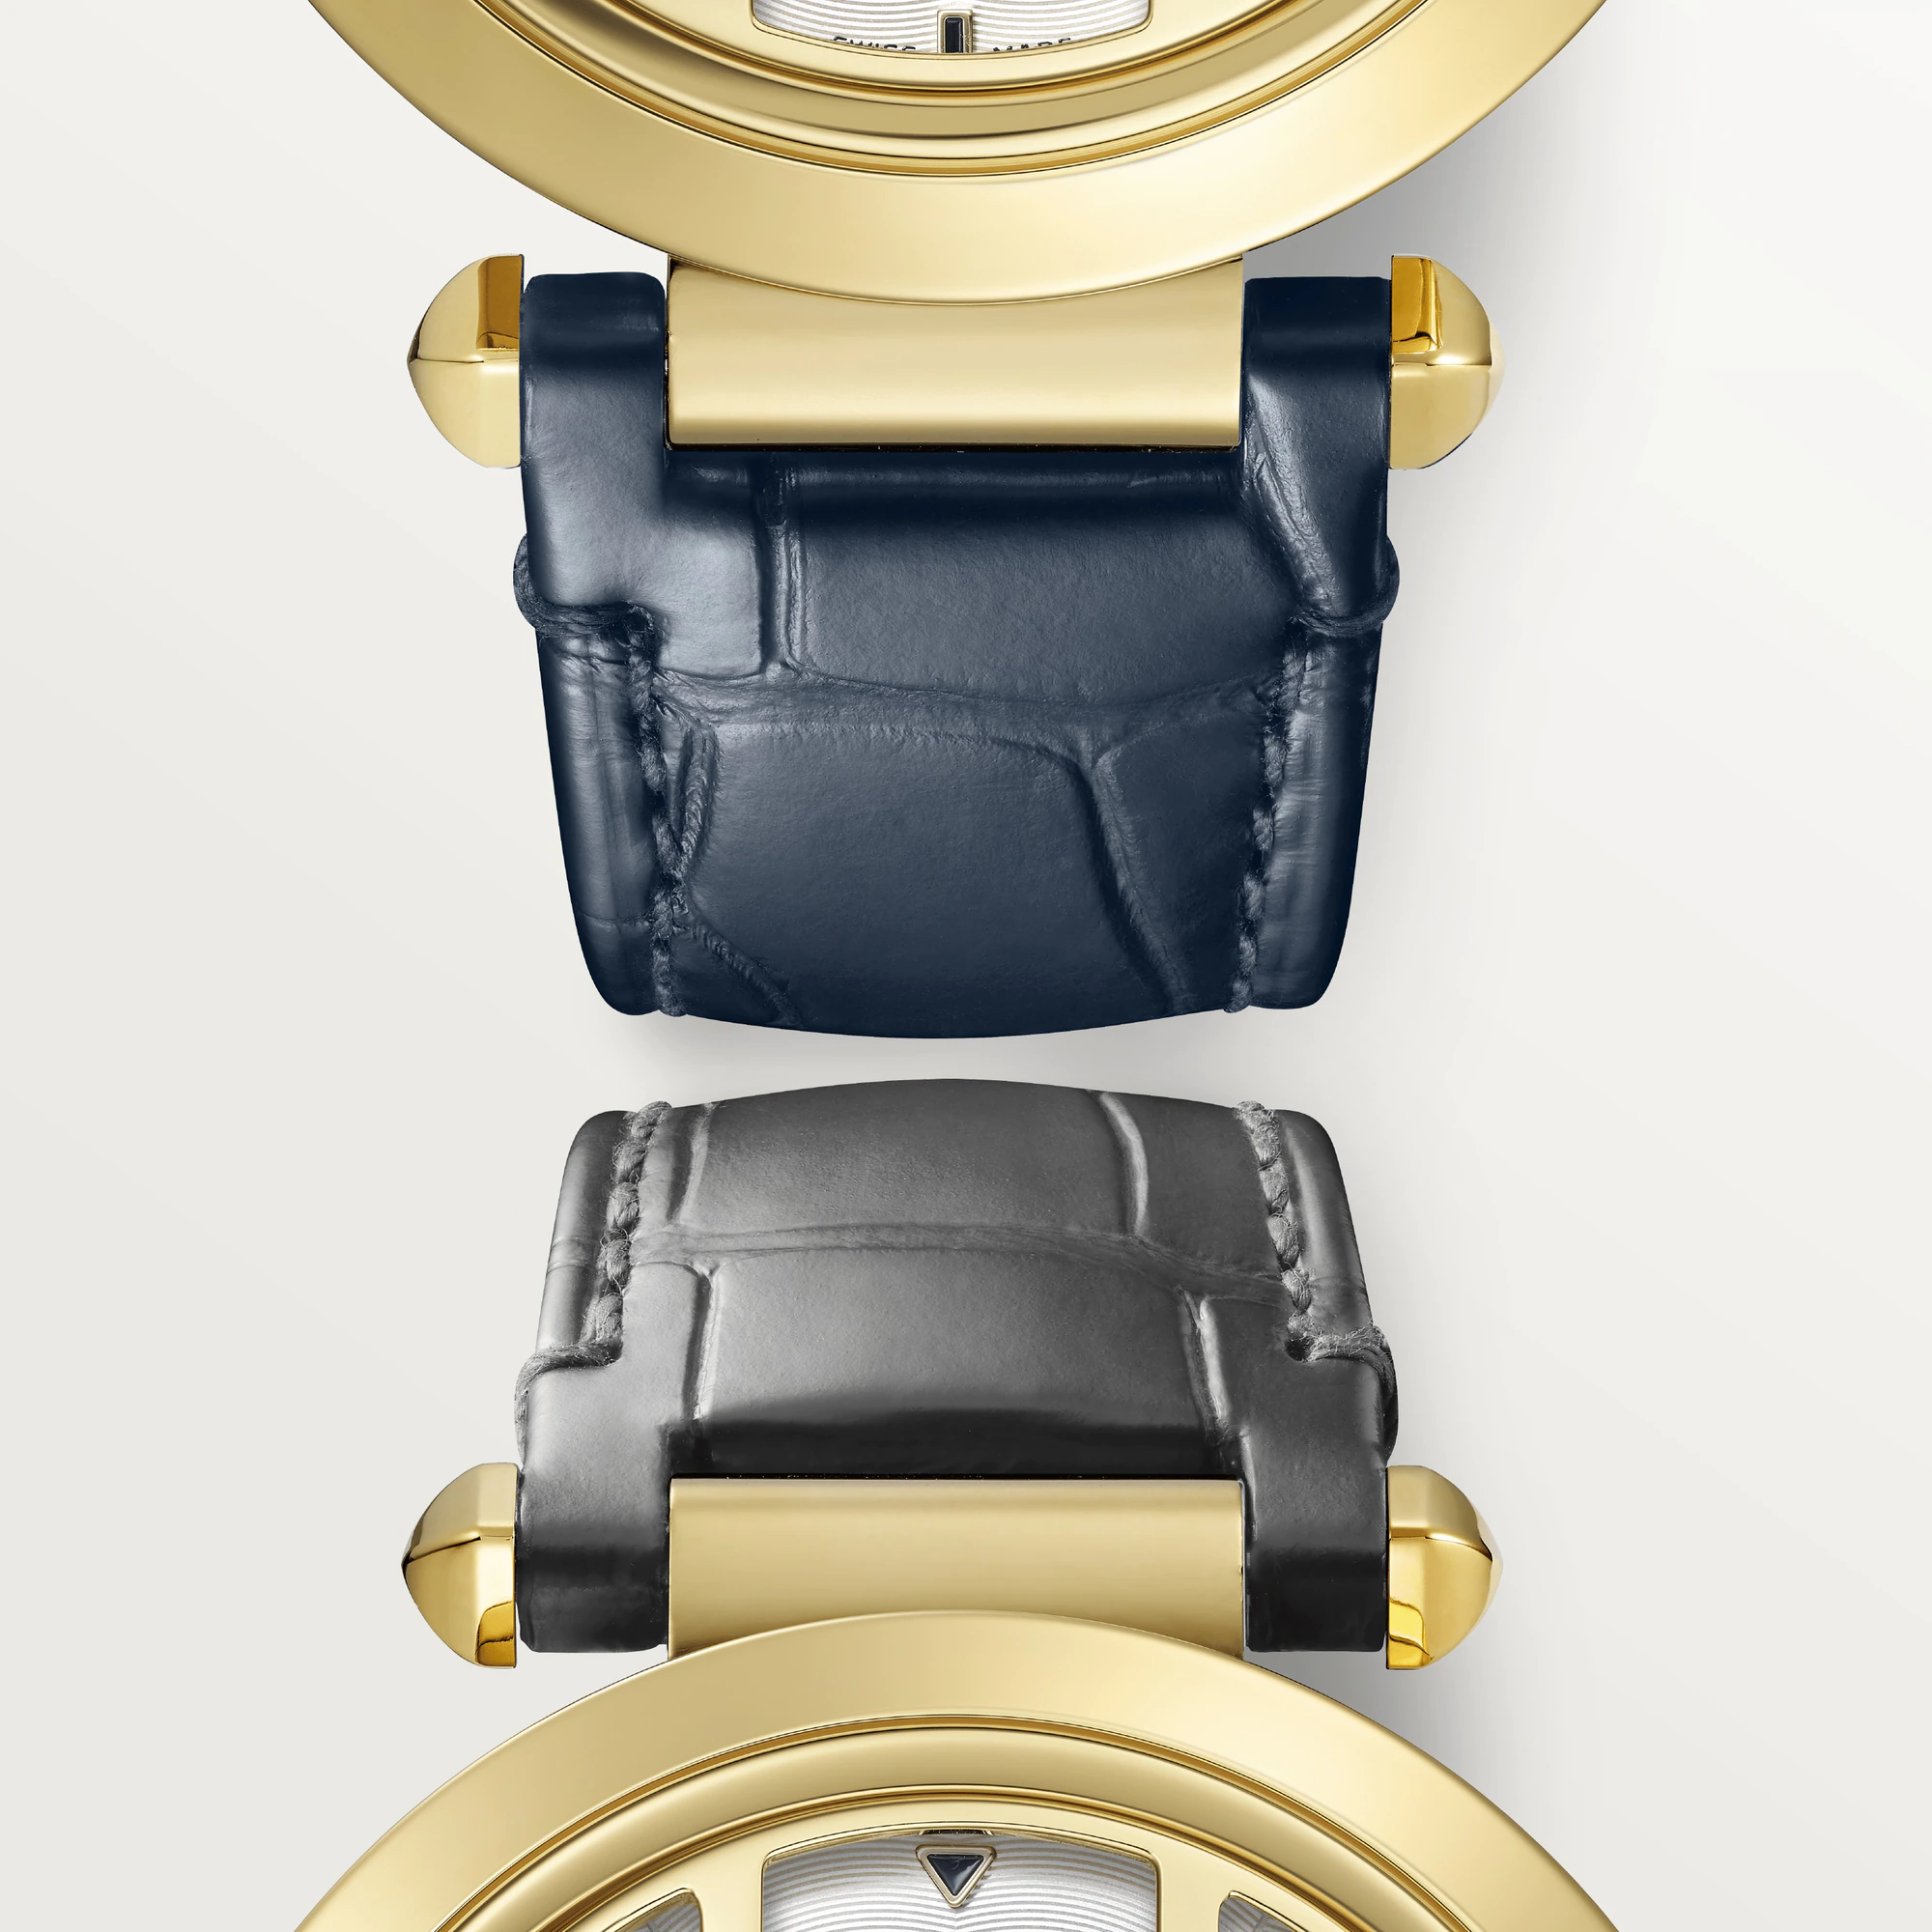 Cartier Pasha 41 mm Yellow Gold Men's Watch